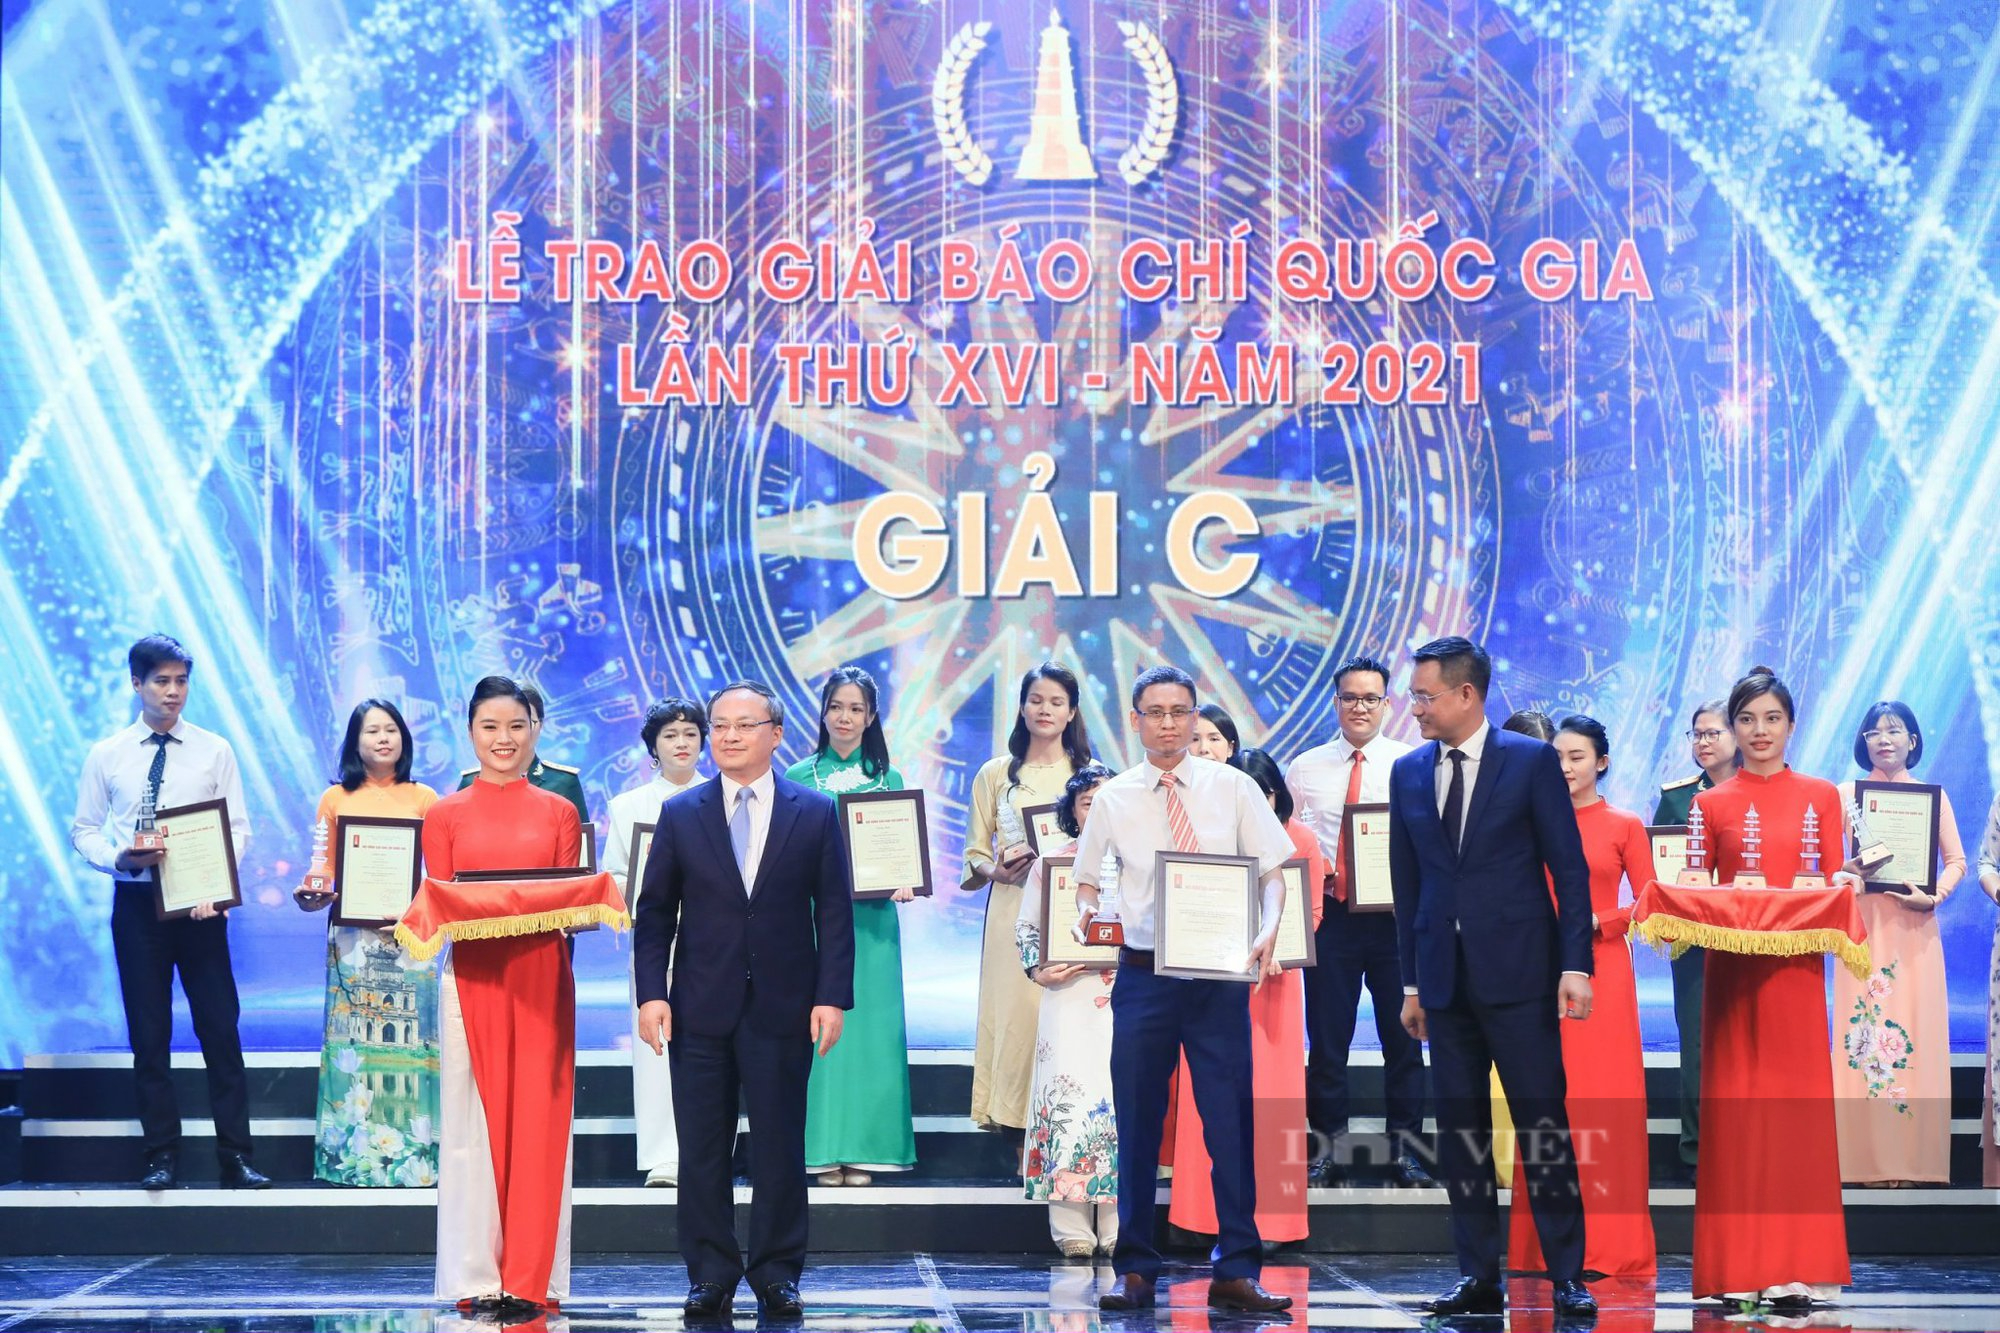 Báo NTNN/Dân Việt đoạt hàng loạt Giải Báo chí Quốc gia lần thứ XVI - năm 2021 - Ảnh 6.